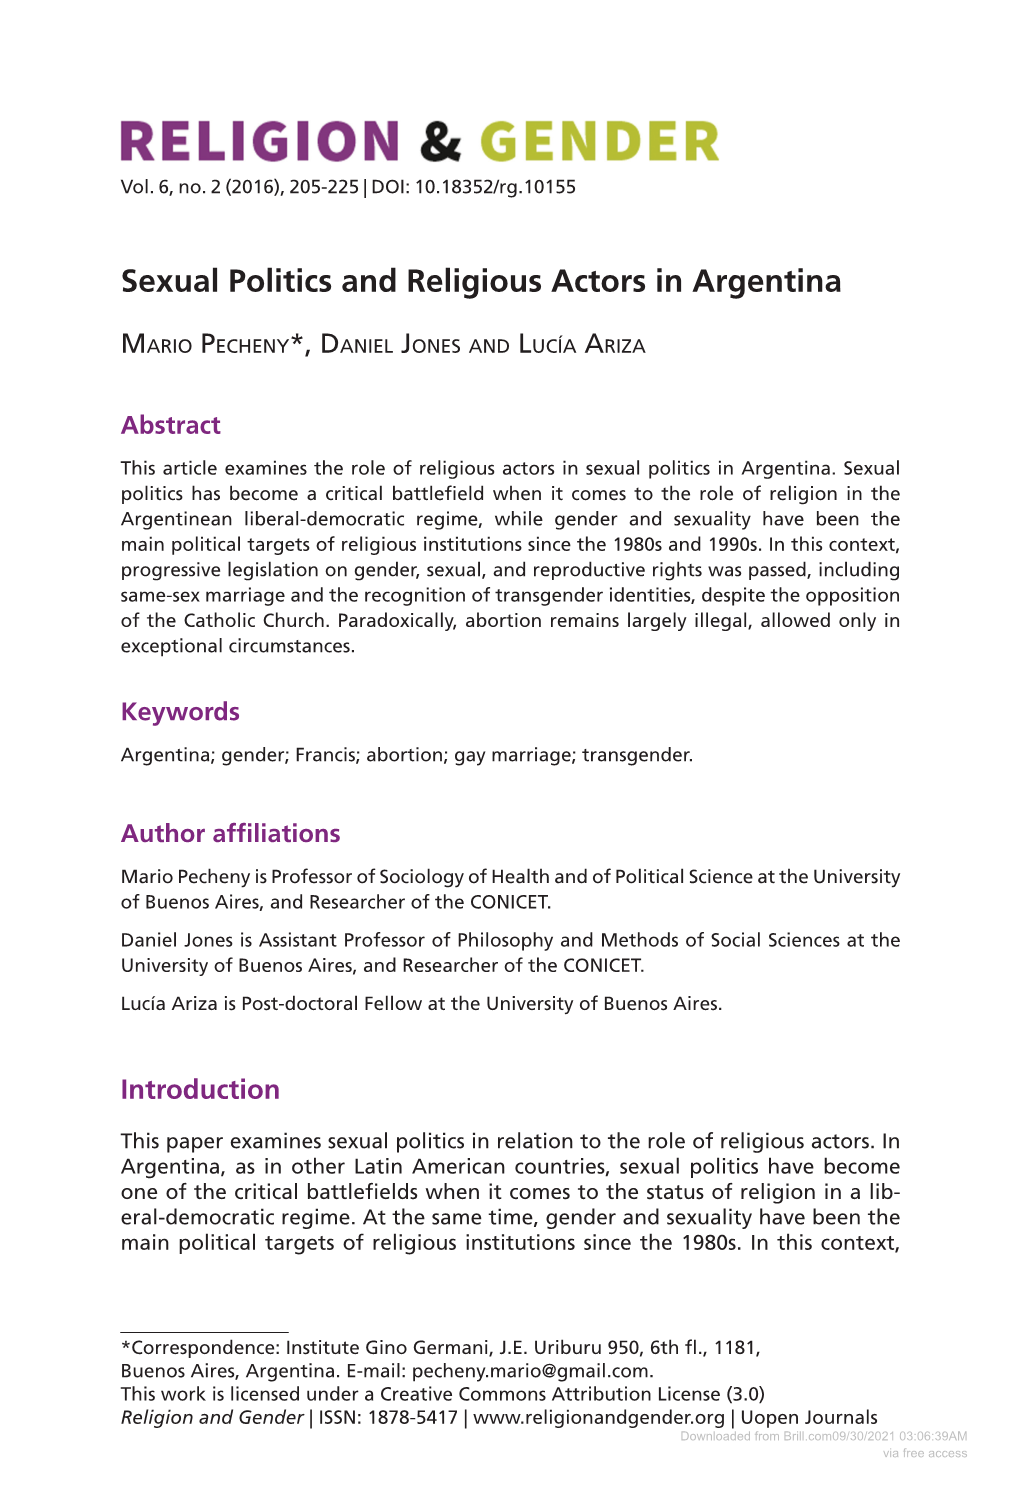 Sexual Politics and Religious Actors in Argentina